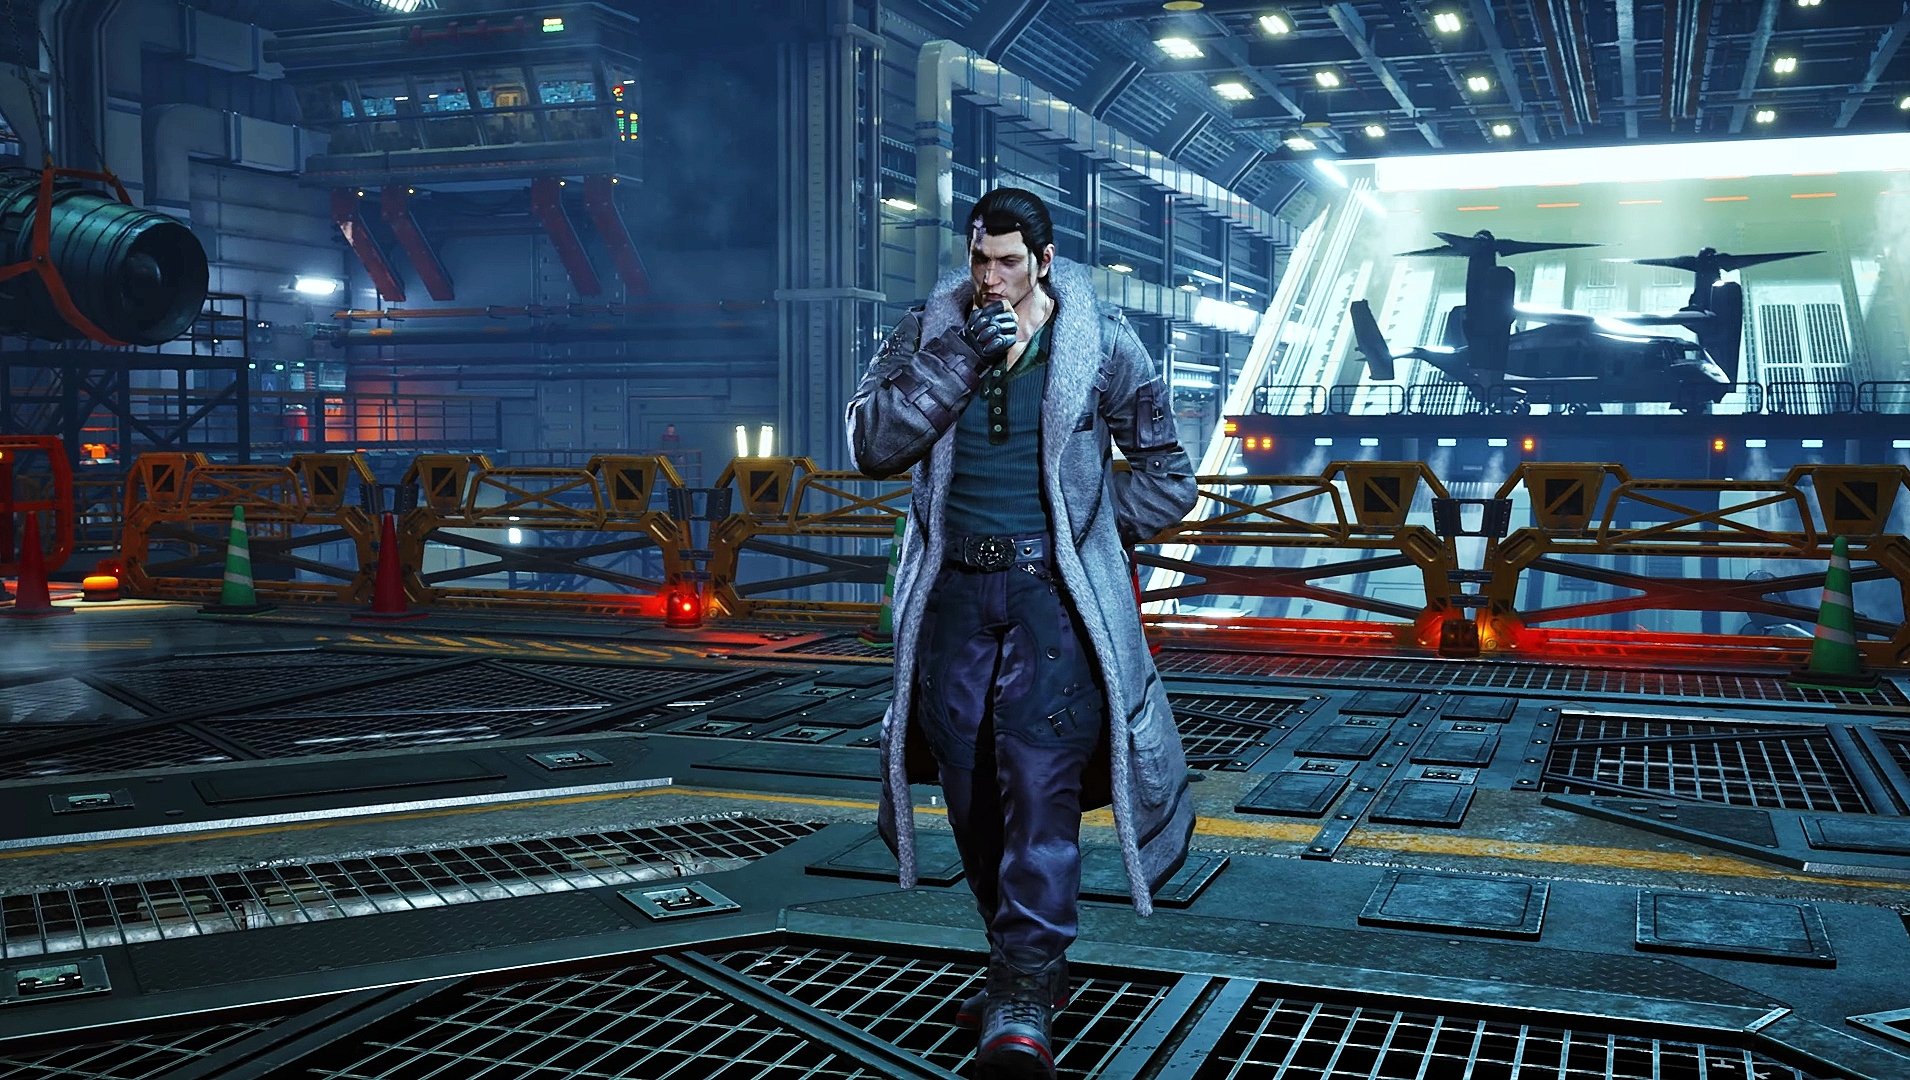 Sergei Dragunov revelado em novo trailer de Tekken 8